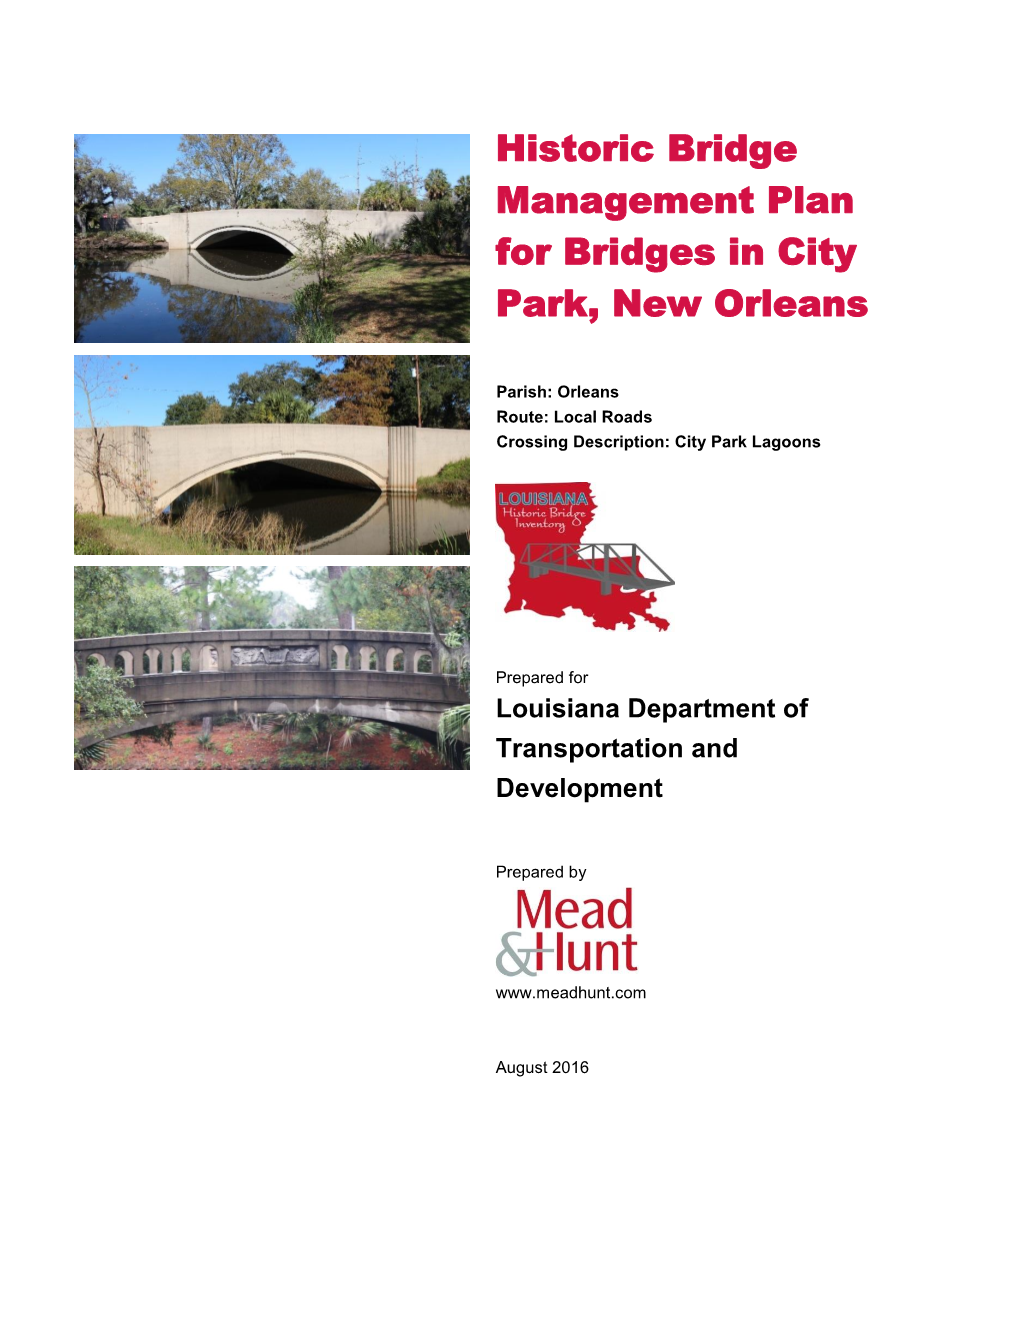 Historic Bridge Management Plan for Bridges in City Park, New Orleans